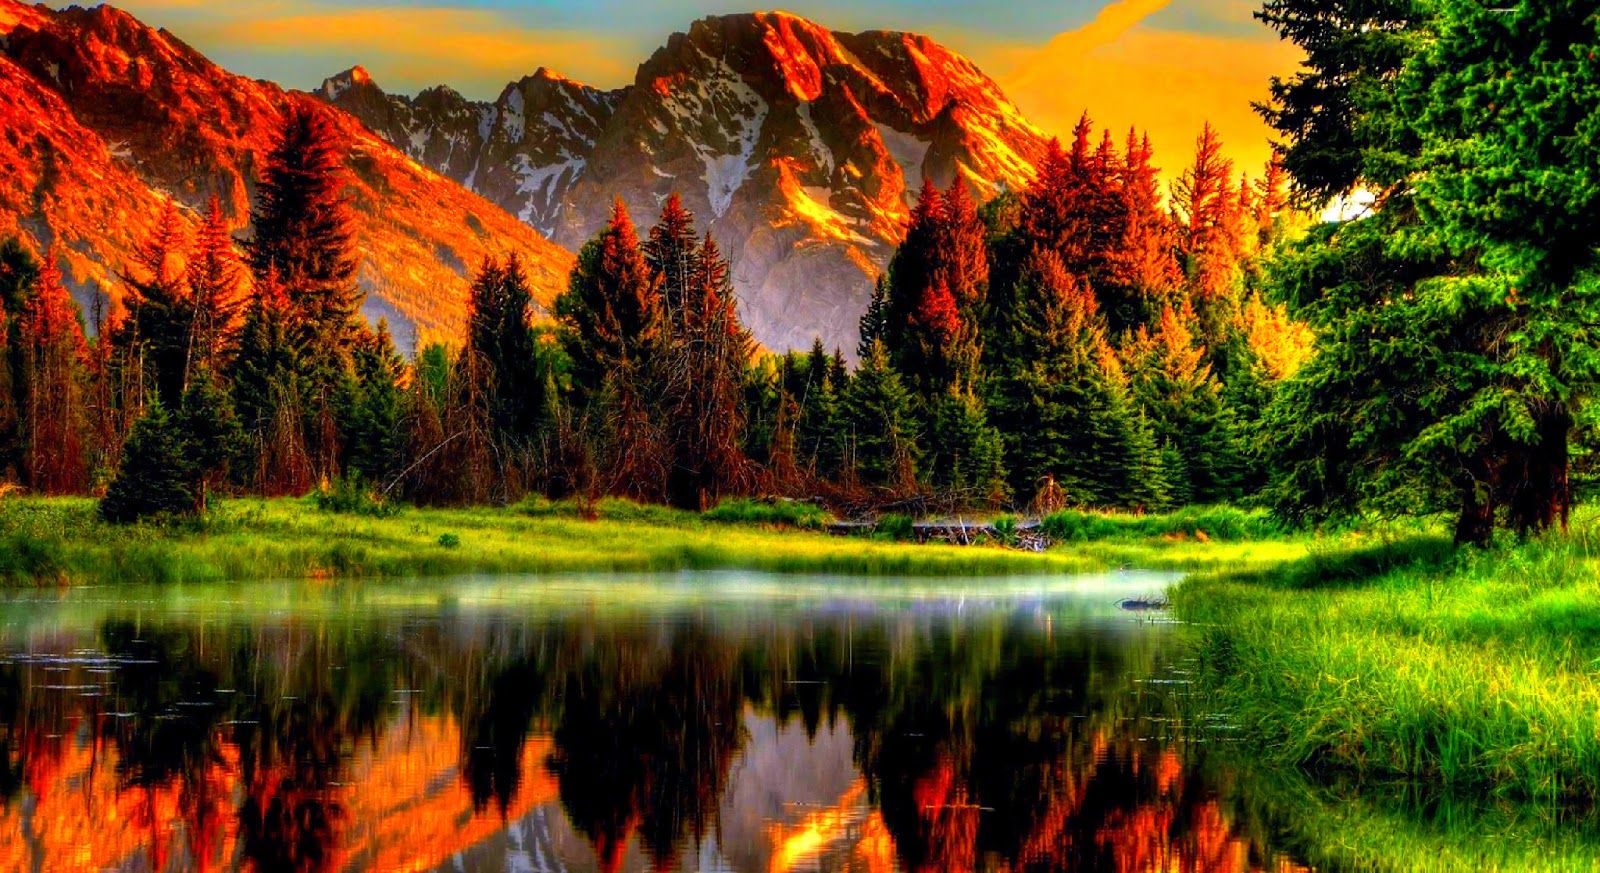 Download beautiful scenery wallpaper. Beautiful scenery picture, Beautiful scenery wallpaper, Scenery wallpaper